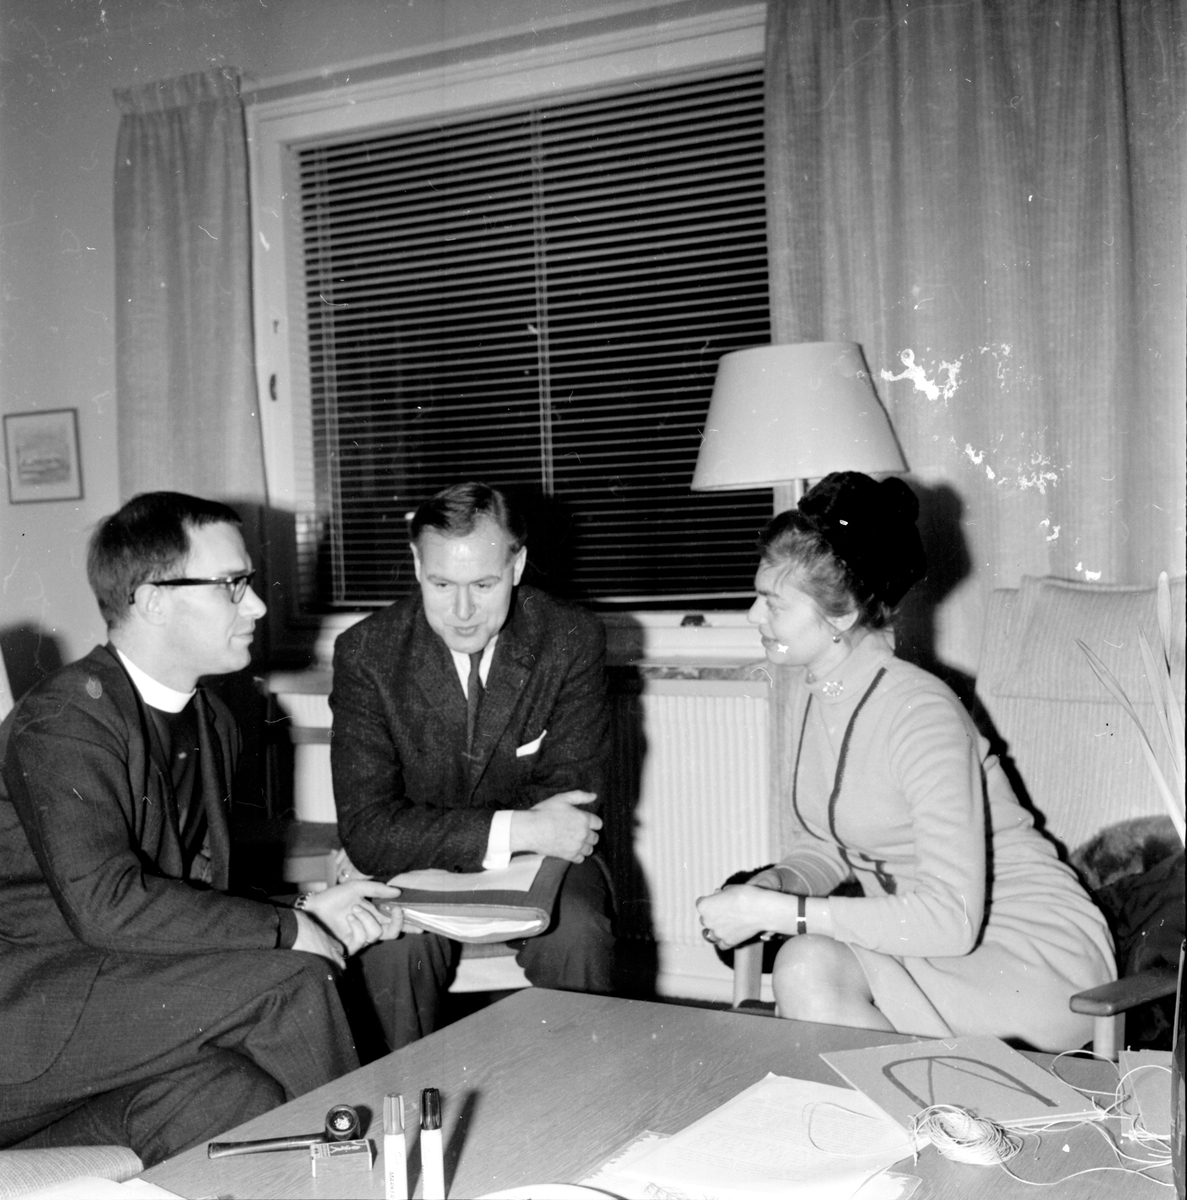 Kamratdagar på Folkhögskolan,
L.Solen, L.Skoog, Eva Persson,
15 - 17 Jan 1965